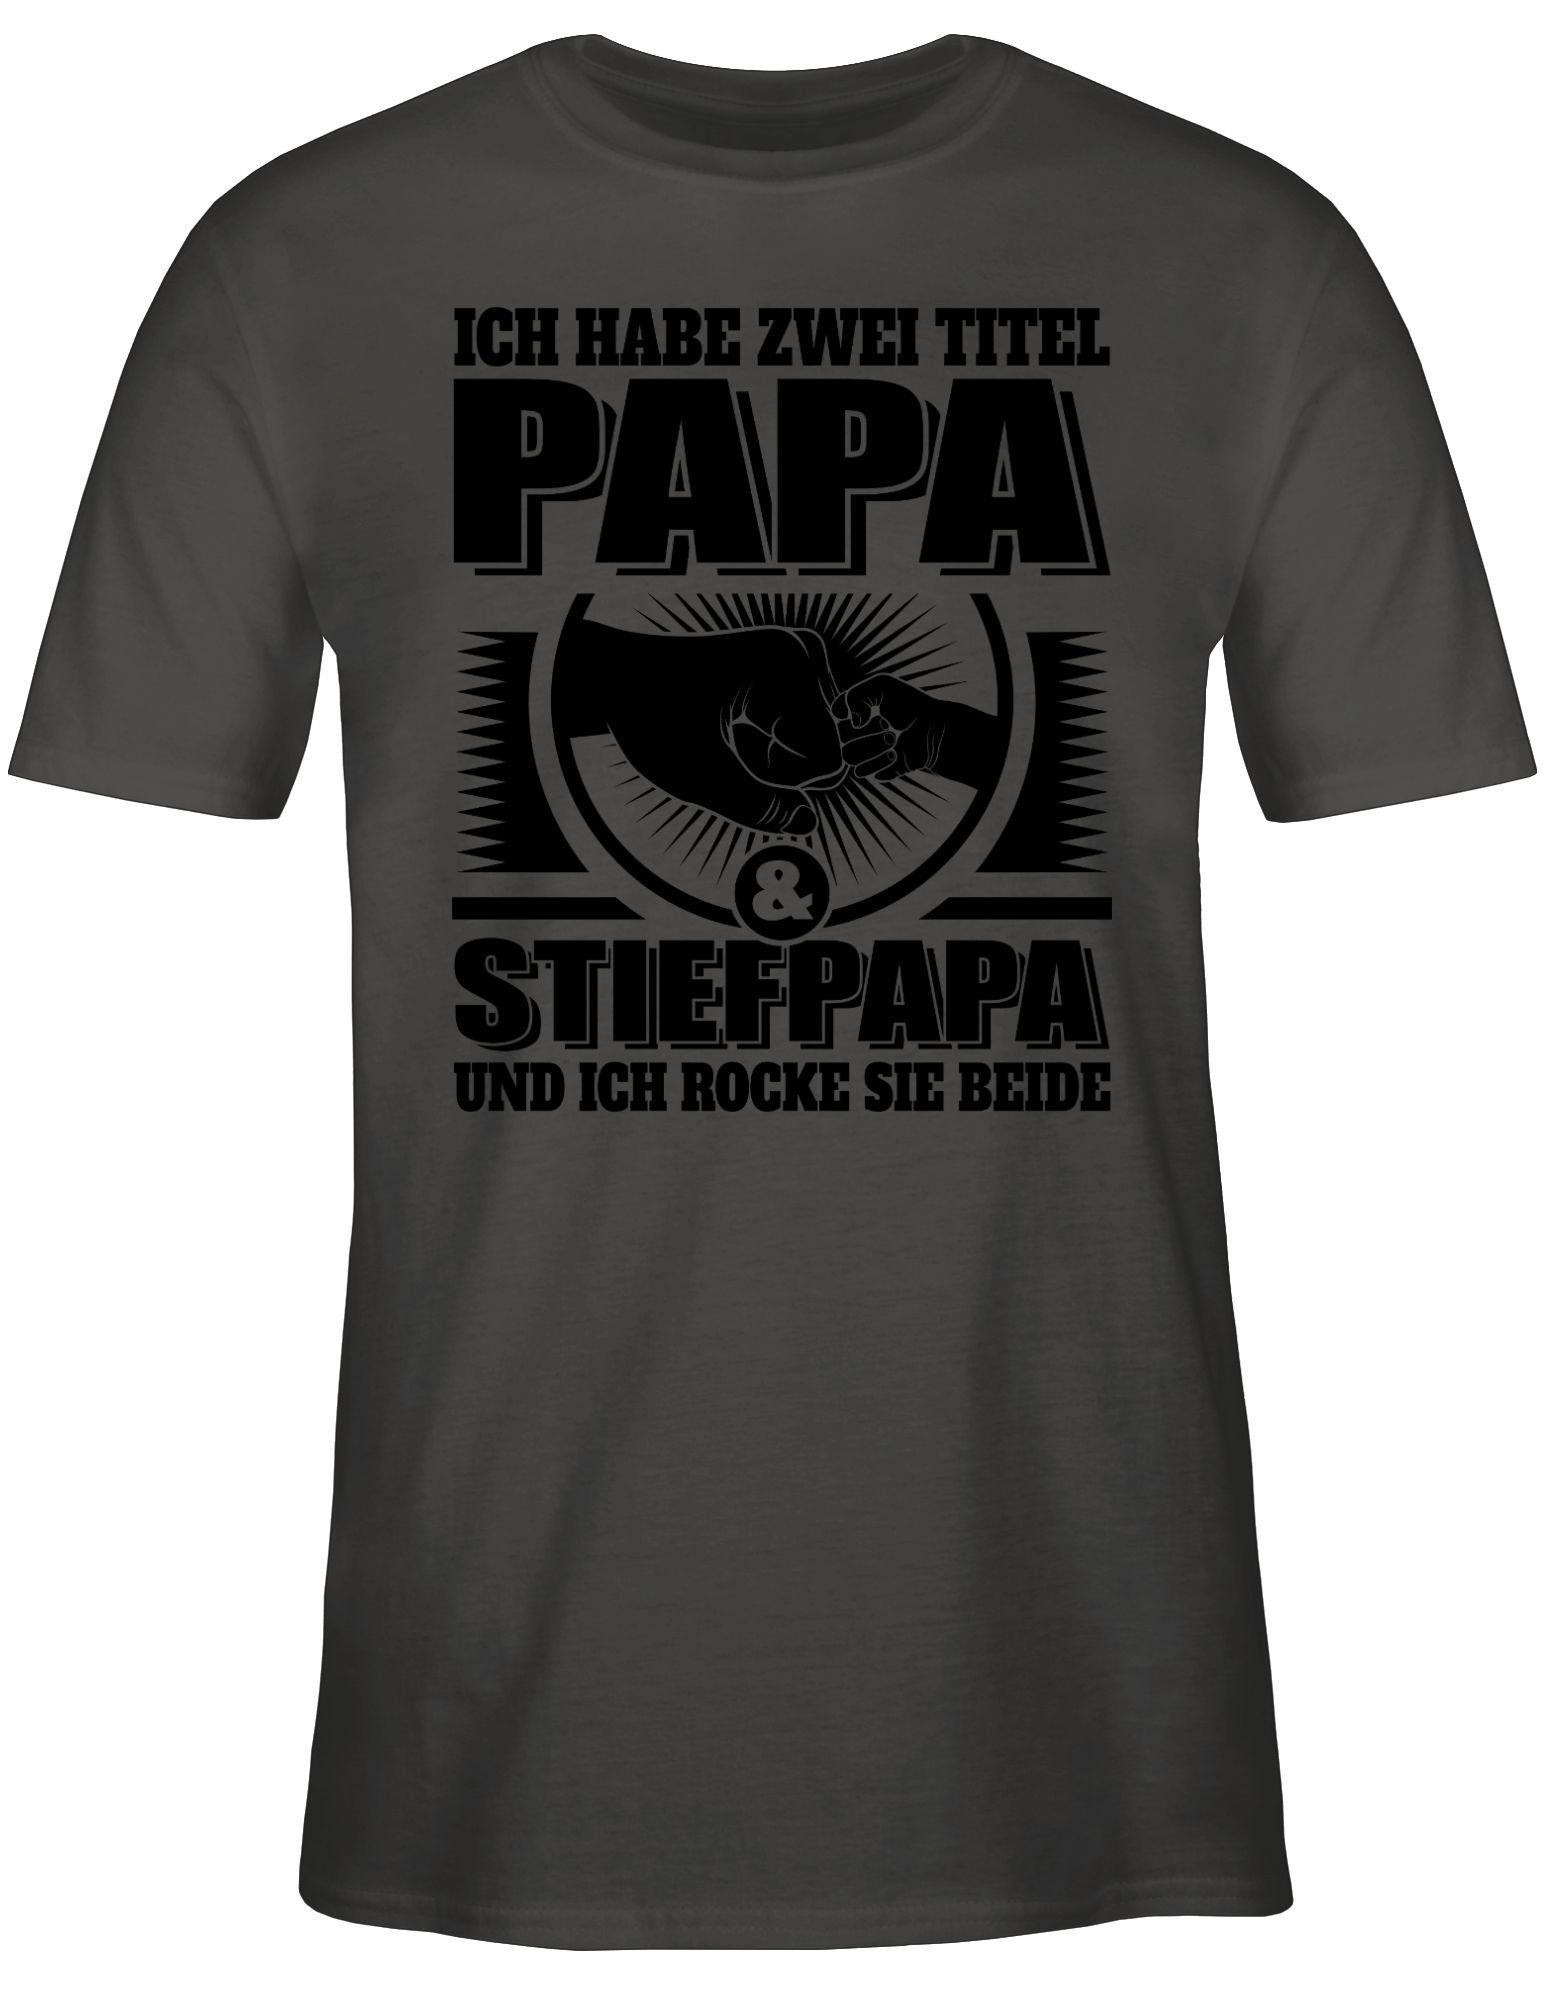 beide und zwei T-Shirt Papa - habe - sie und Titel rocke ich Ich Papa sch Geschenk Shirtracer Dunkelgrau für 01 Vatertag Stiefpapa